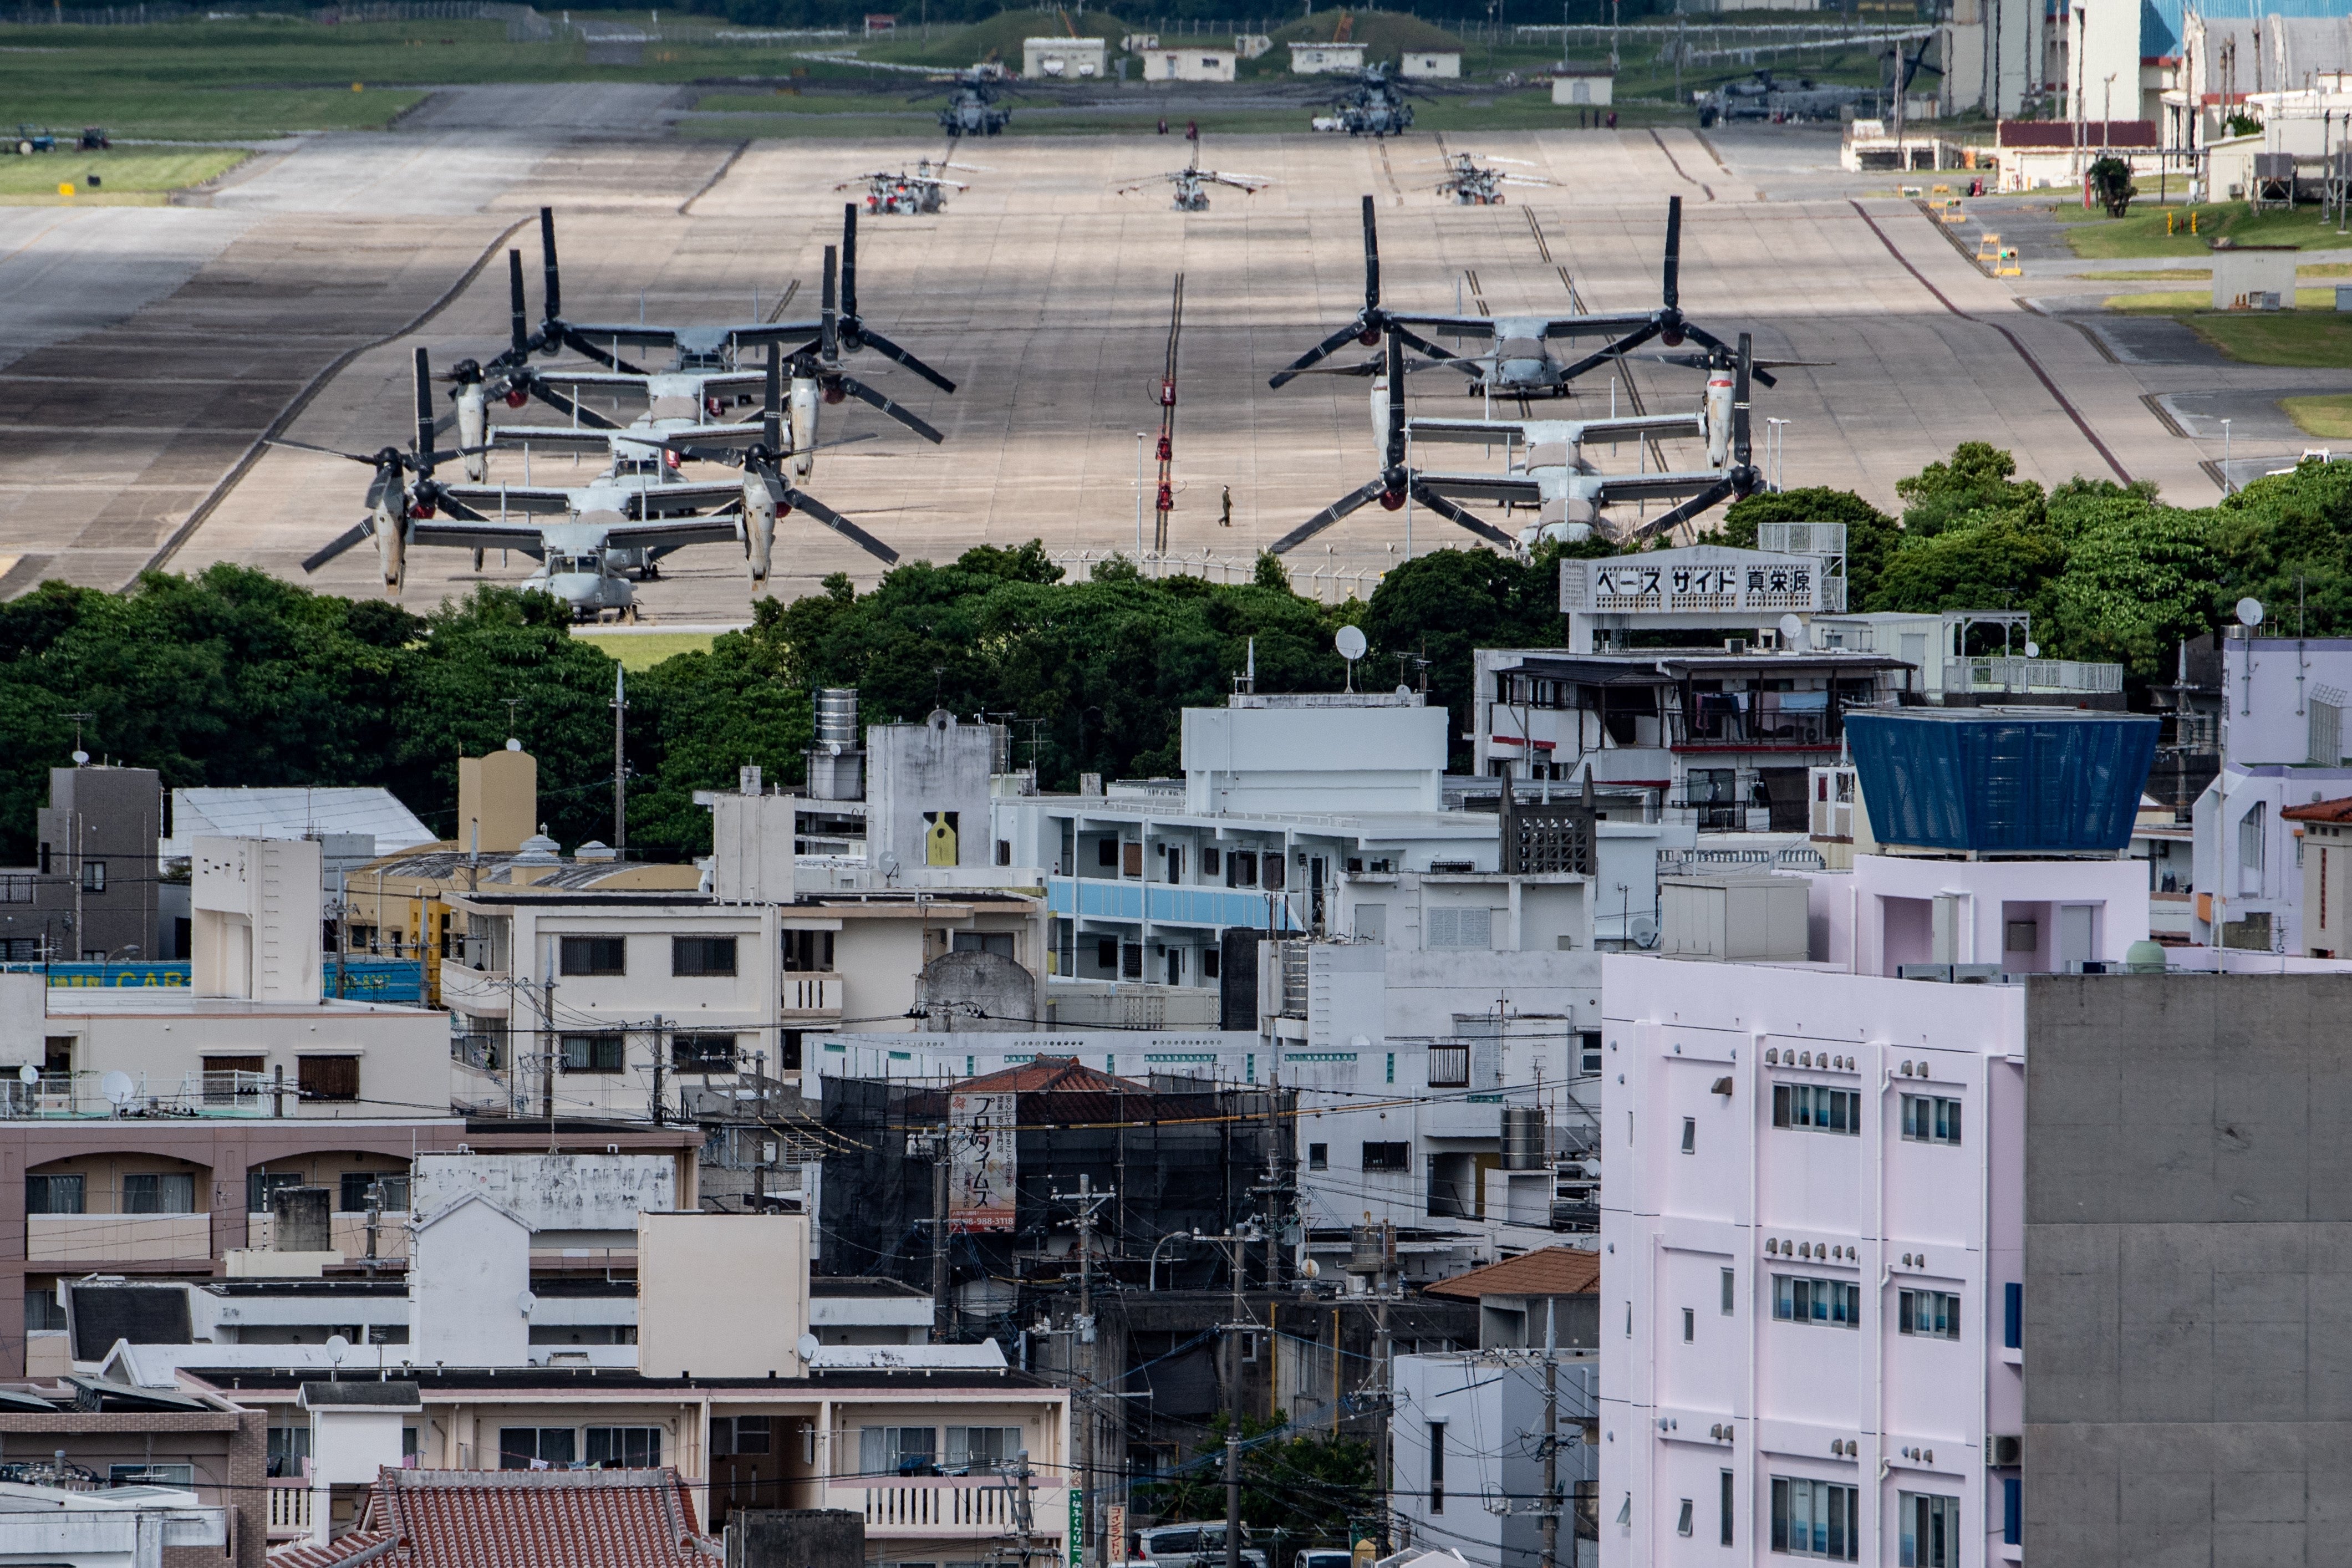 US Marine Corps Air Station Futenma seen from Kakazutakadai Park in Ginowan, Okinawa prefecture